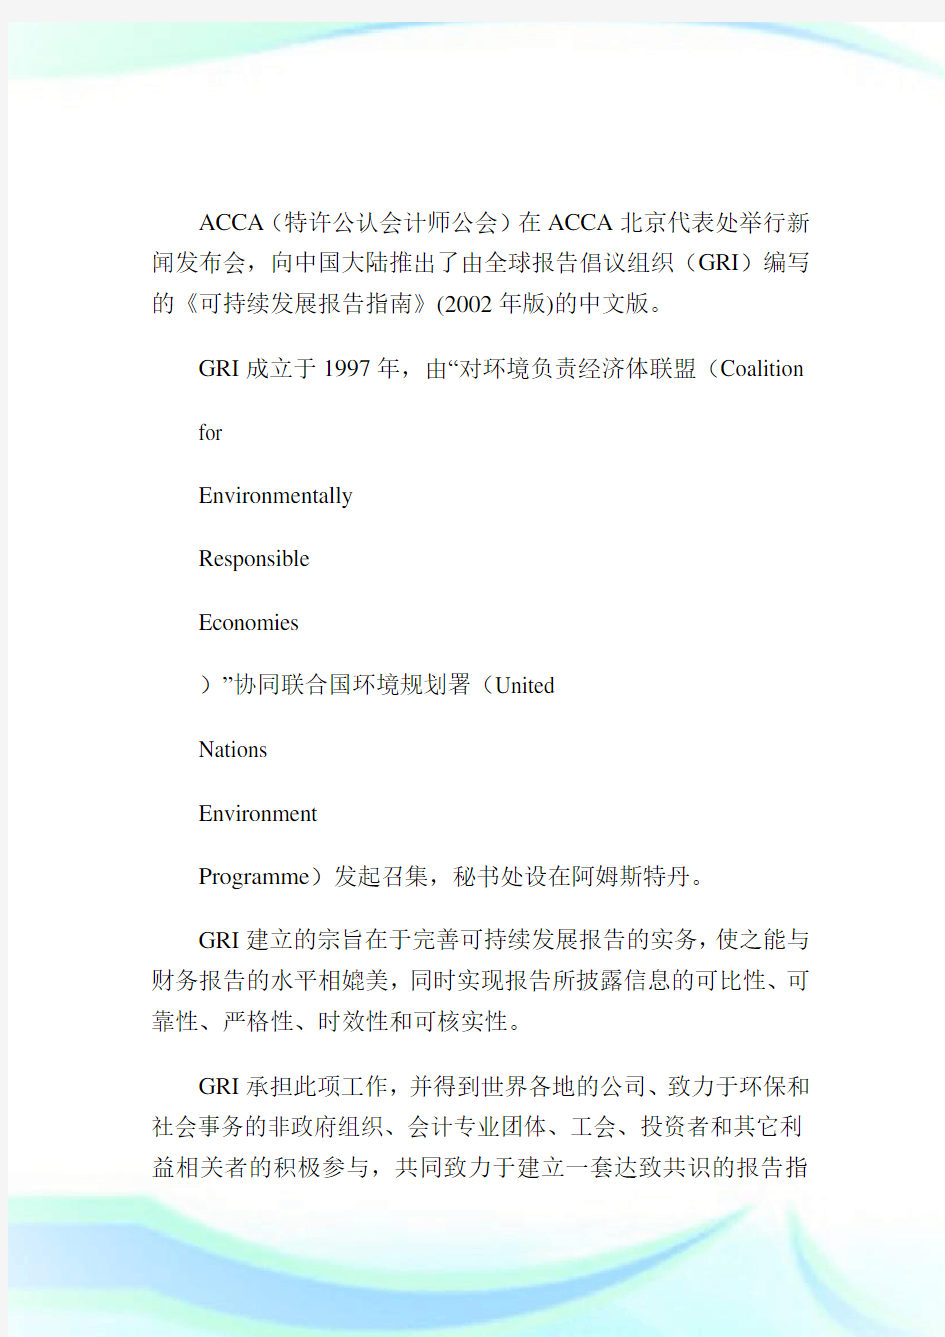 ACCA在中国发布《可持续发展报告指南》-ACCA-CAT考试.doc